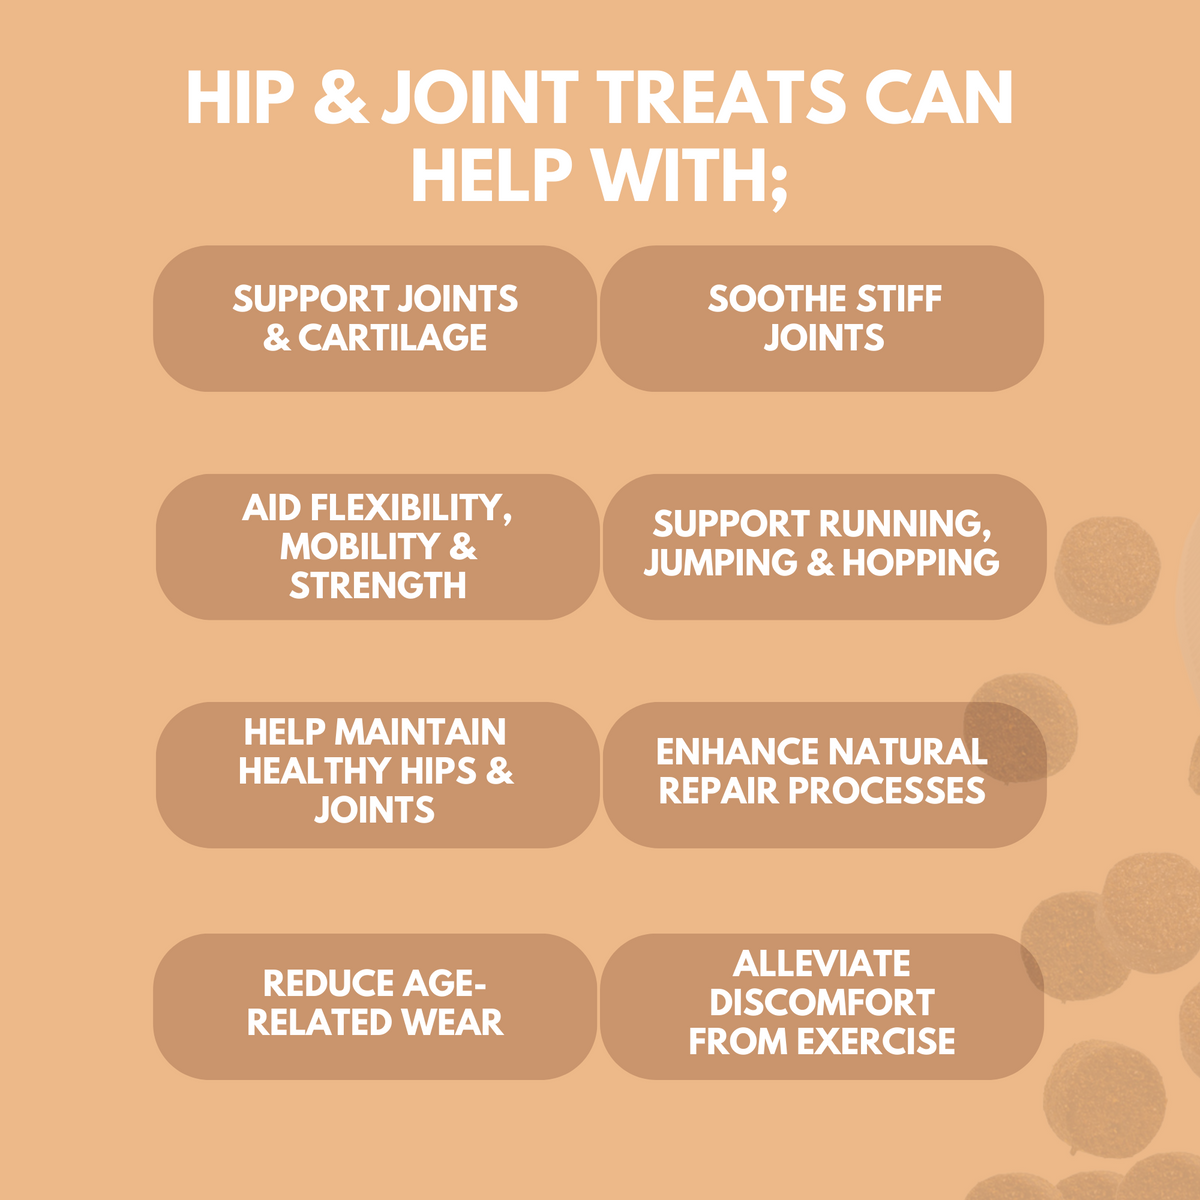 Hip & Joint Treats